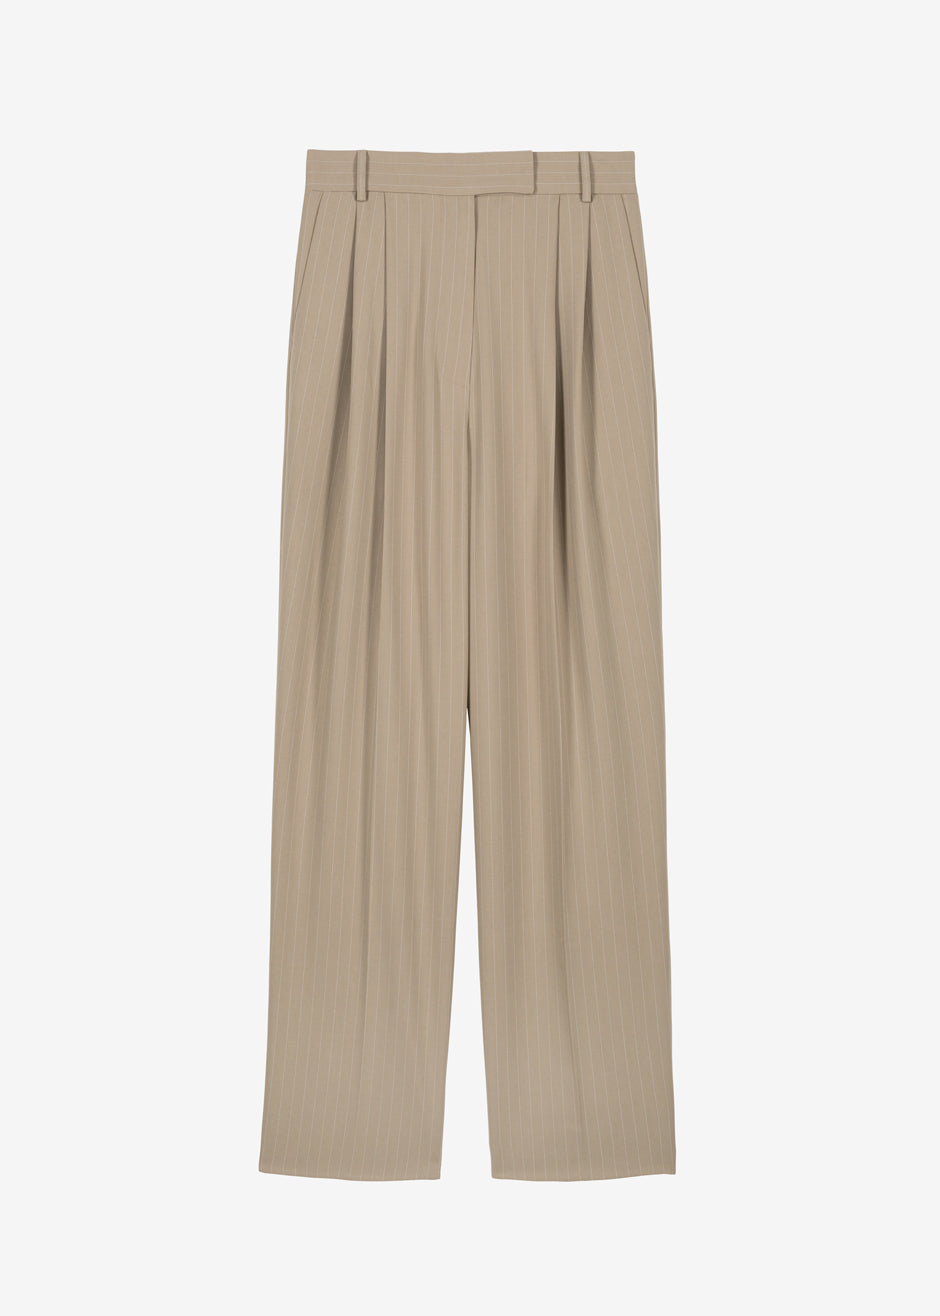 Bea Fluid Pinstripe Suit Pants - Camel - 8